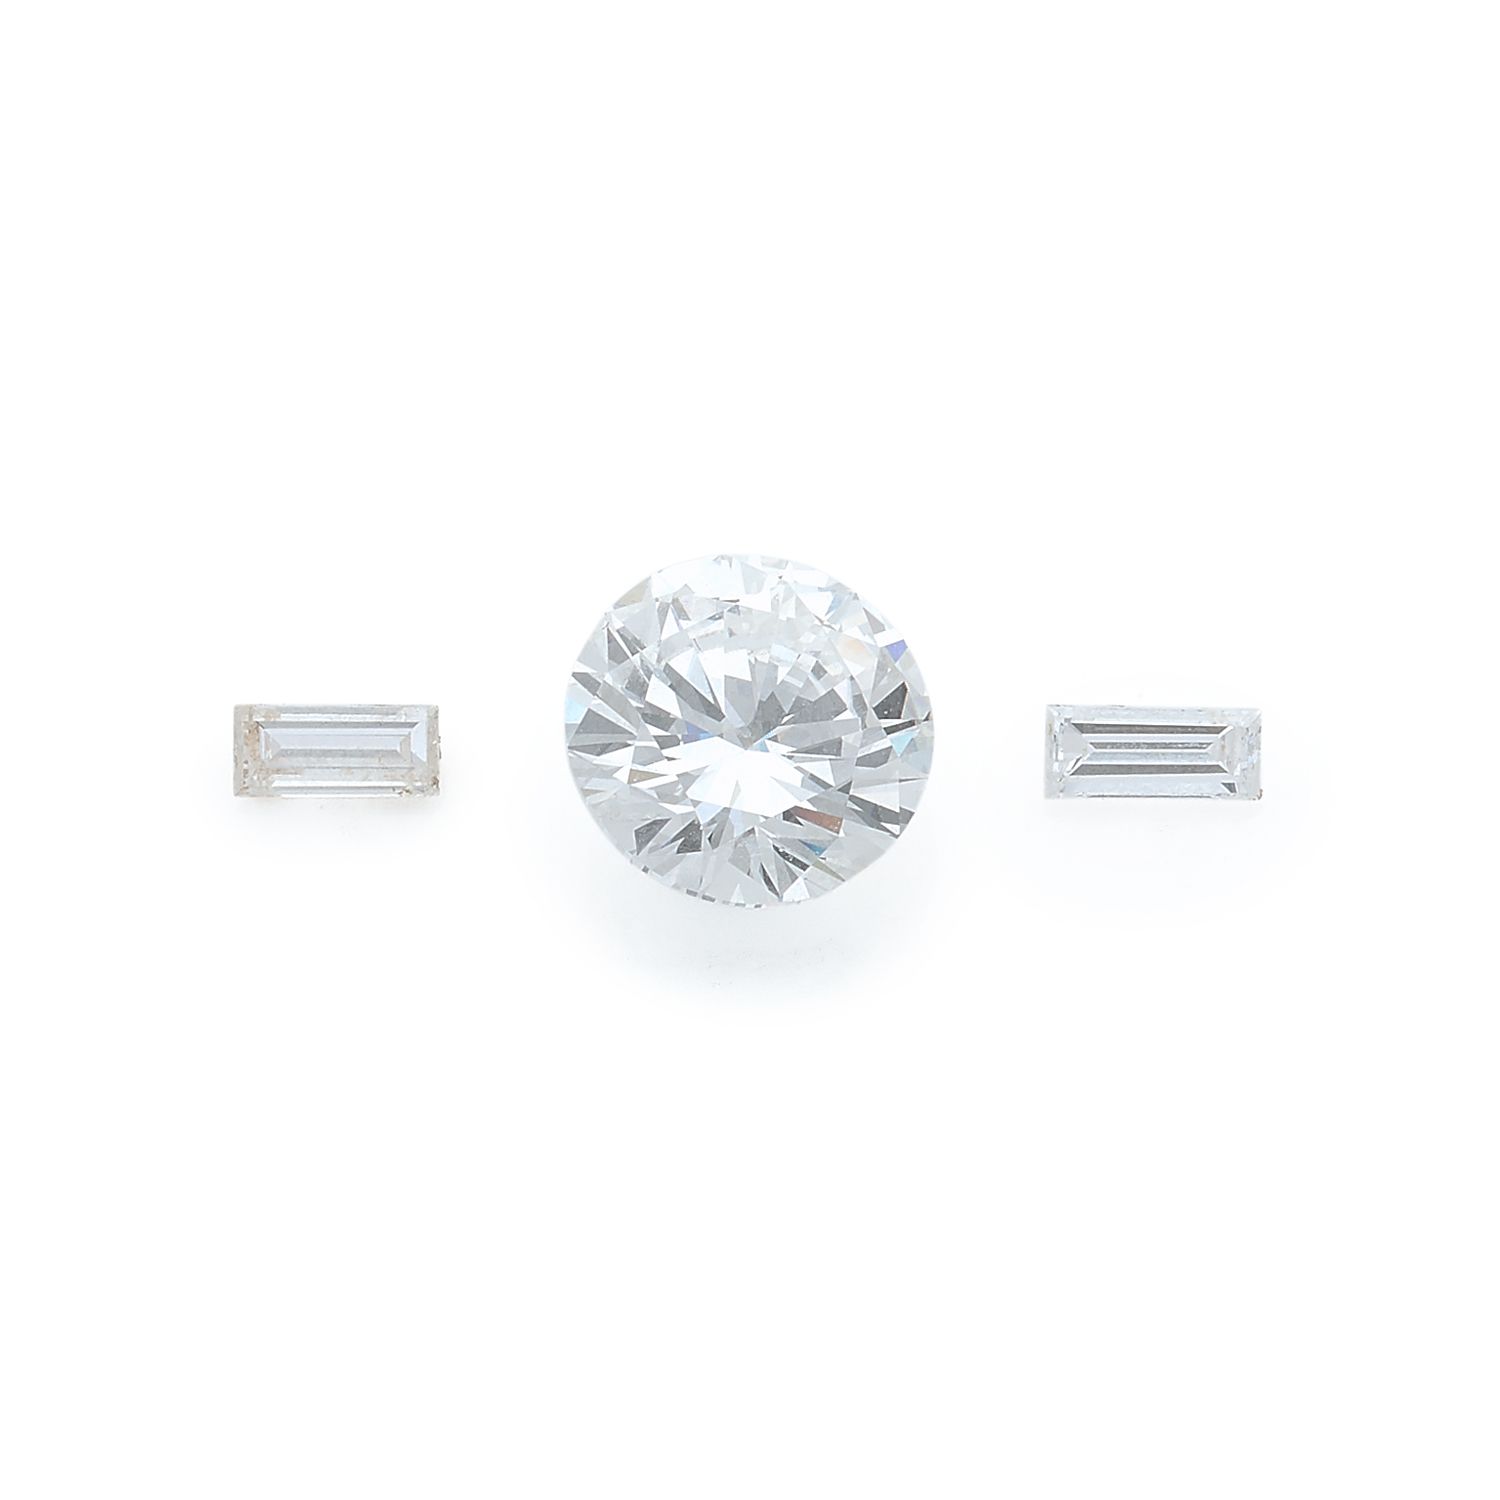 Null DIAMANT TAILLE BRILLANT SUR PAPIER

Poids du diamant : 2,37 carats. Il est &hellip;